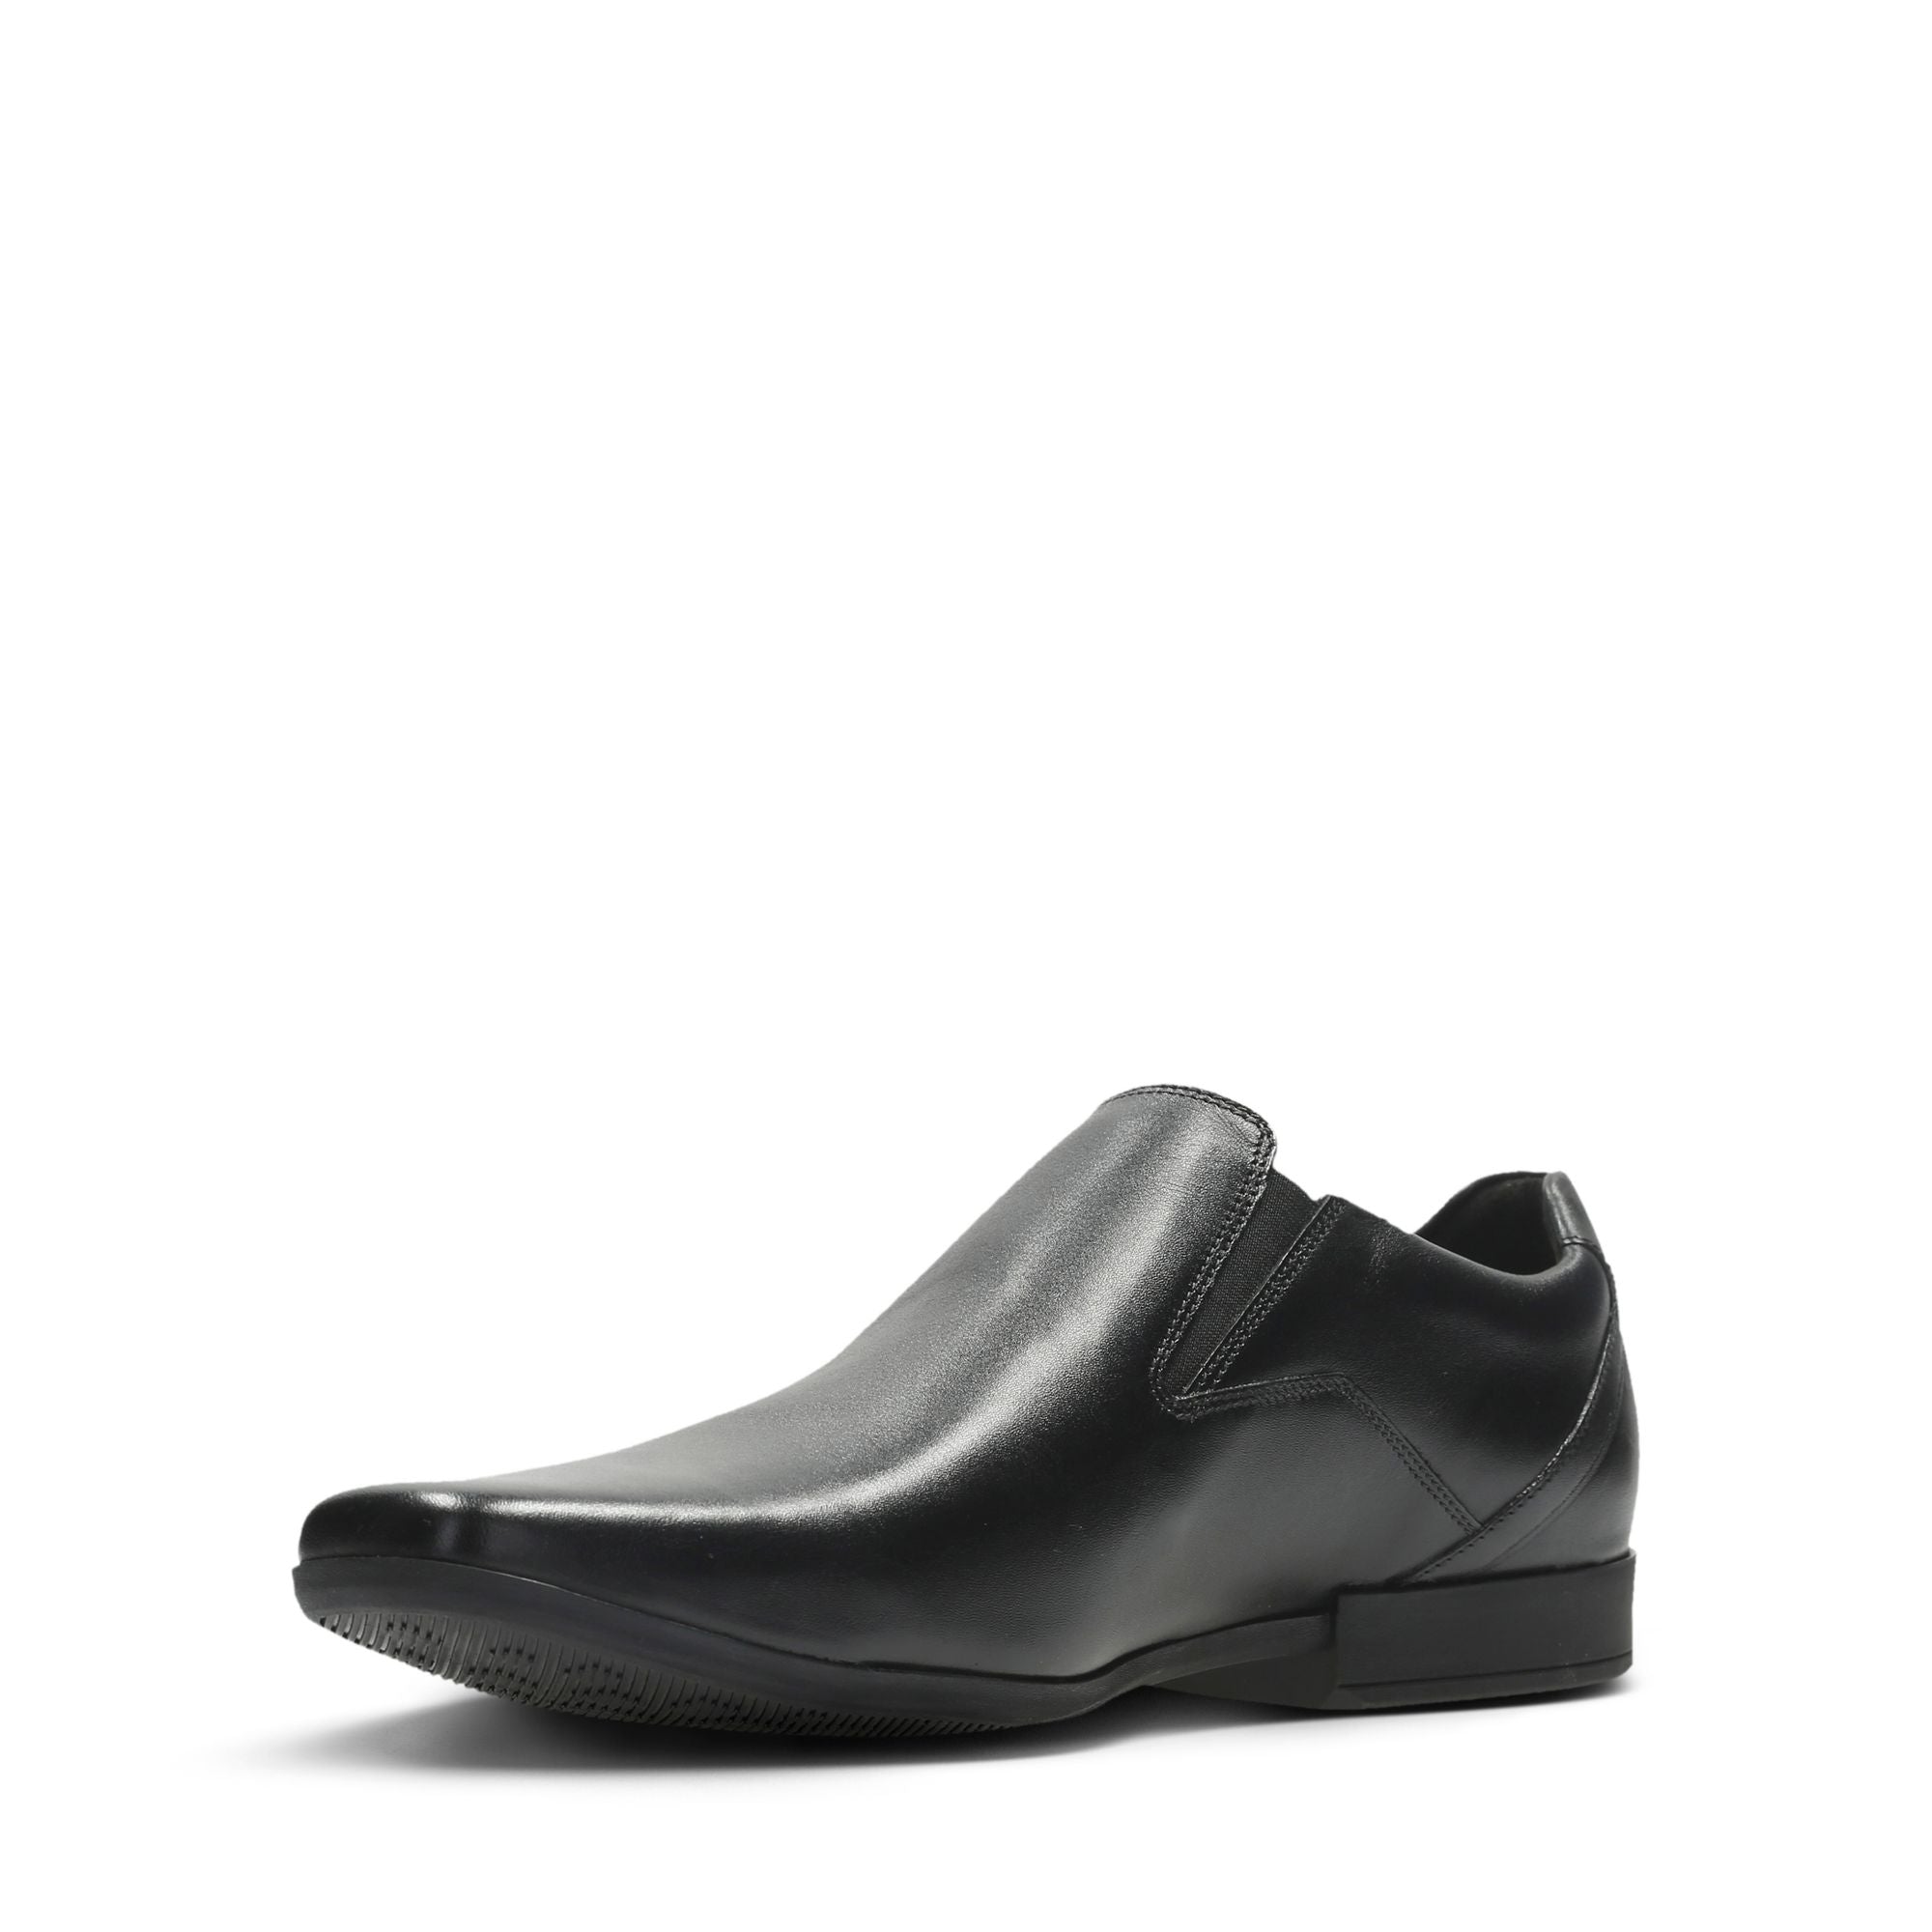 Clarks Glement Slip Black Leather Central Shoes - Limerick City & Kilrush